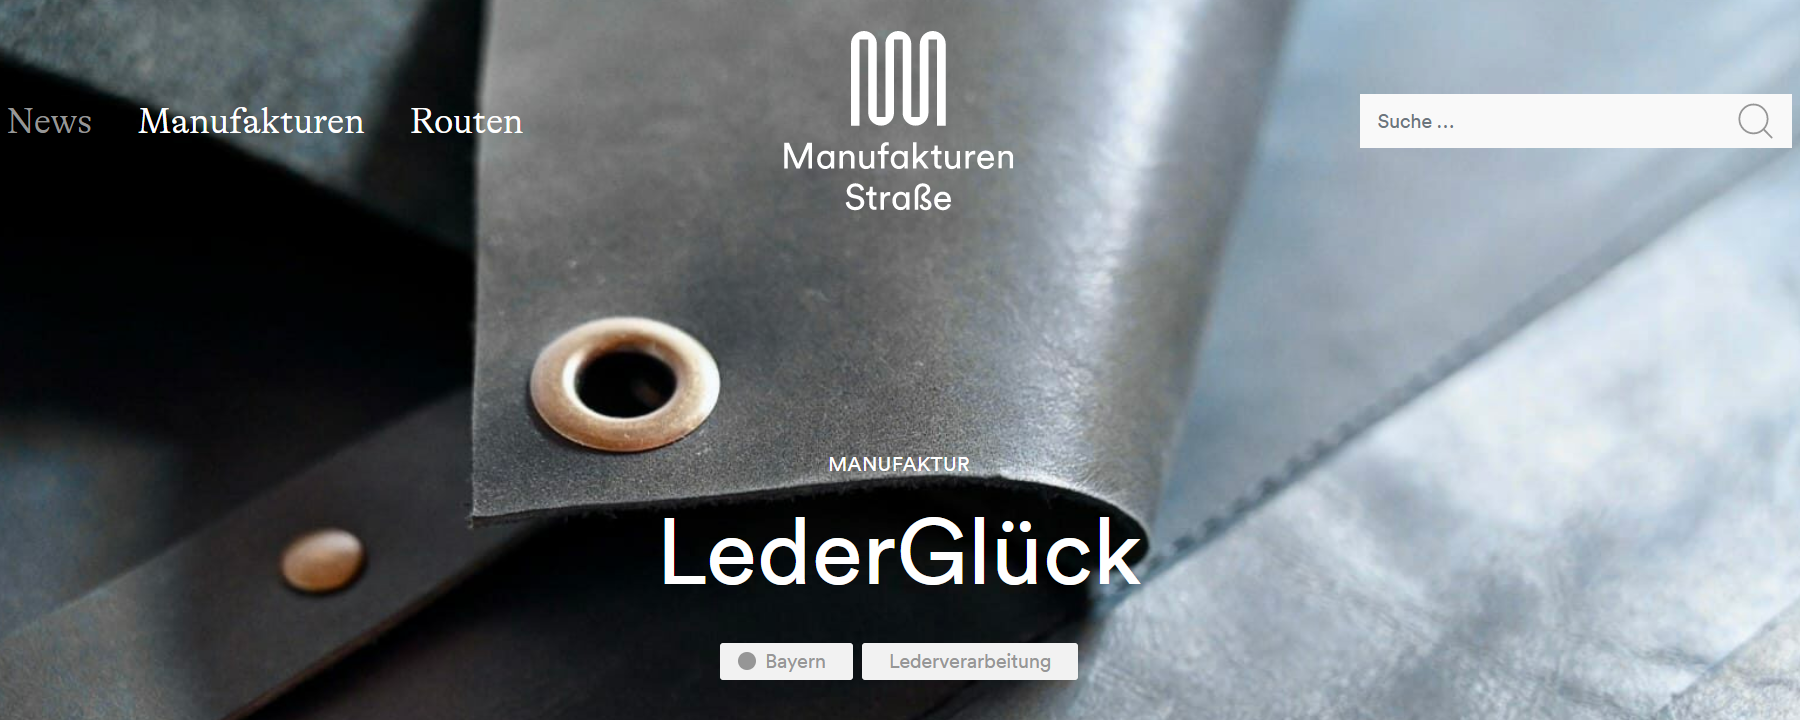 Deutsche Manufakturenstrasse präsentiert LederGlück